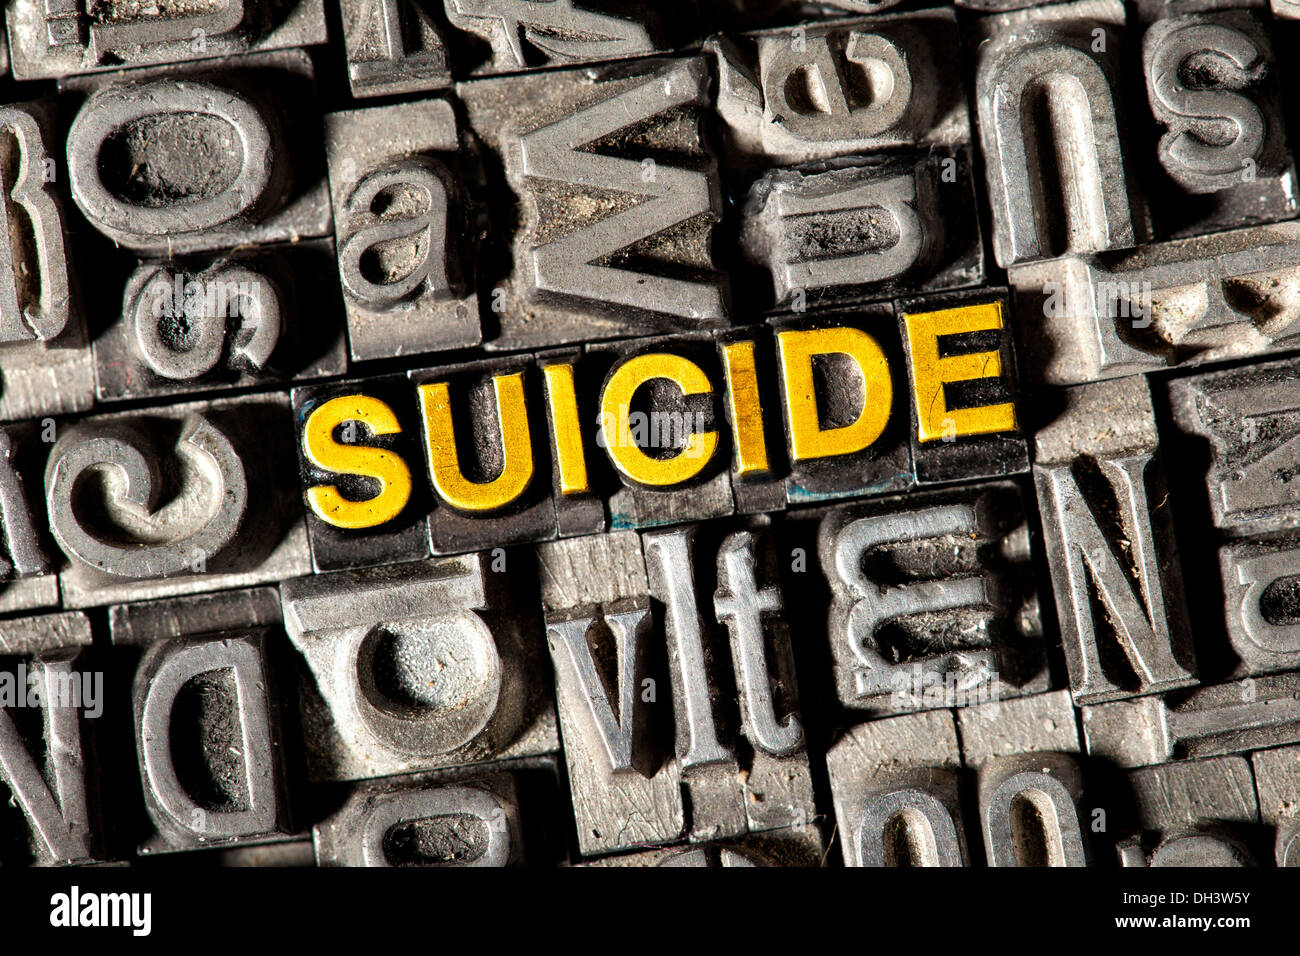 Cable viejo letras que forman la palabra "suicidio" Foto de stock